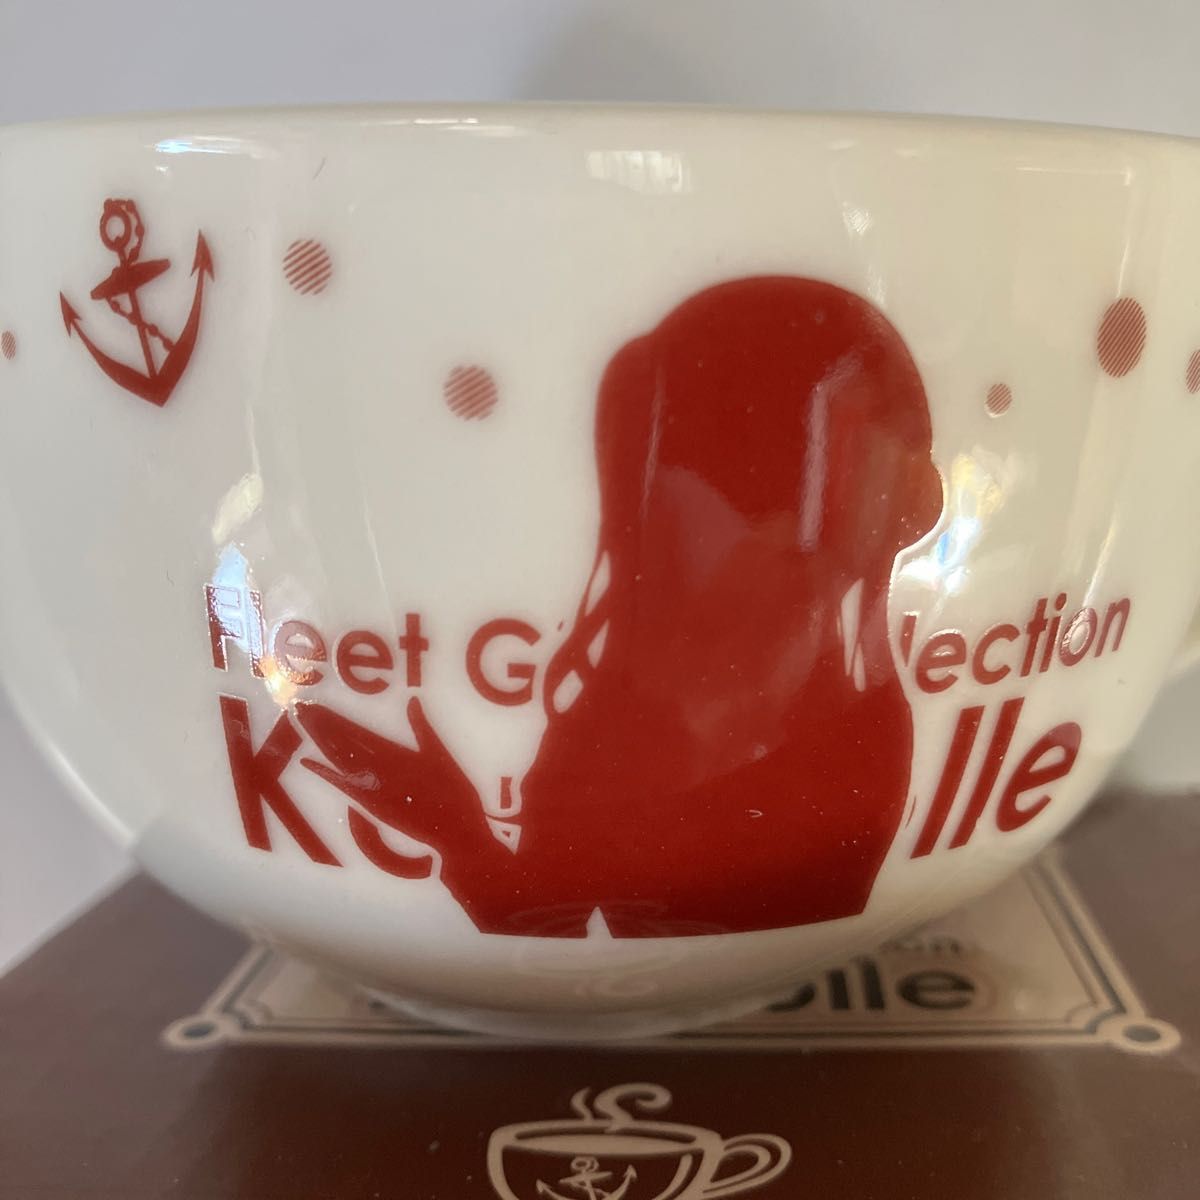 新品 浪漫喫茶くじ 艦これ ゴトランド ロマンカフェ スープカップ マグカップ 磁器 箱入り マグカップ ティーカップに カドカワ